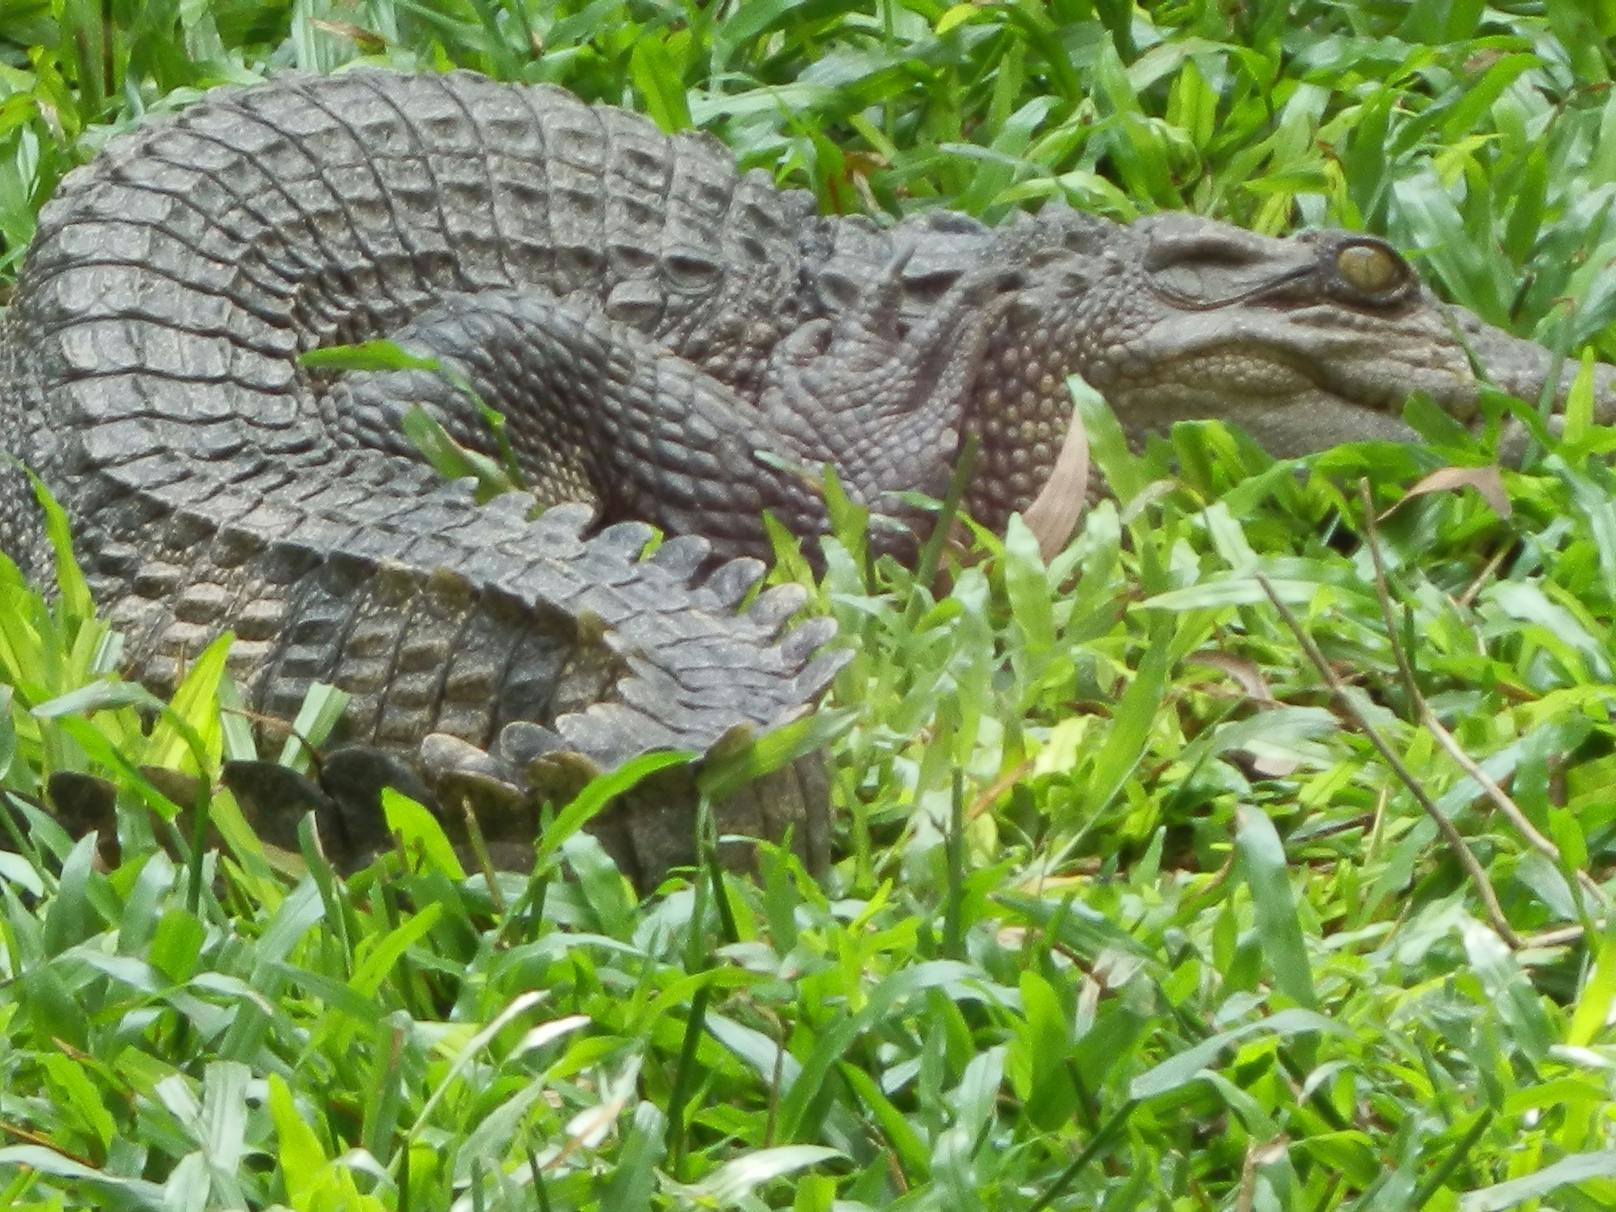 <strong>Siam-Krokodil in Kambodscha</strong>: Auf einer Forschungsmission entdeckte der WWF acht Jungtiere des vom Aussterben bedrohten Siam-Krokodils. Seit über zehn Jahren ist es die erste nachgewiesene natürliche Fortpflanzung dieses Süßwasserkrokodils in Ost-Kambodscha.